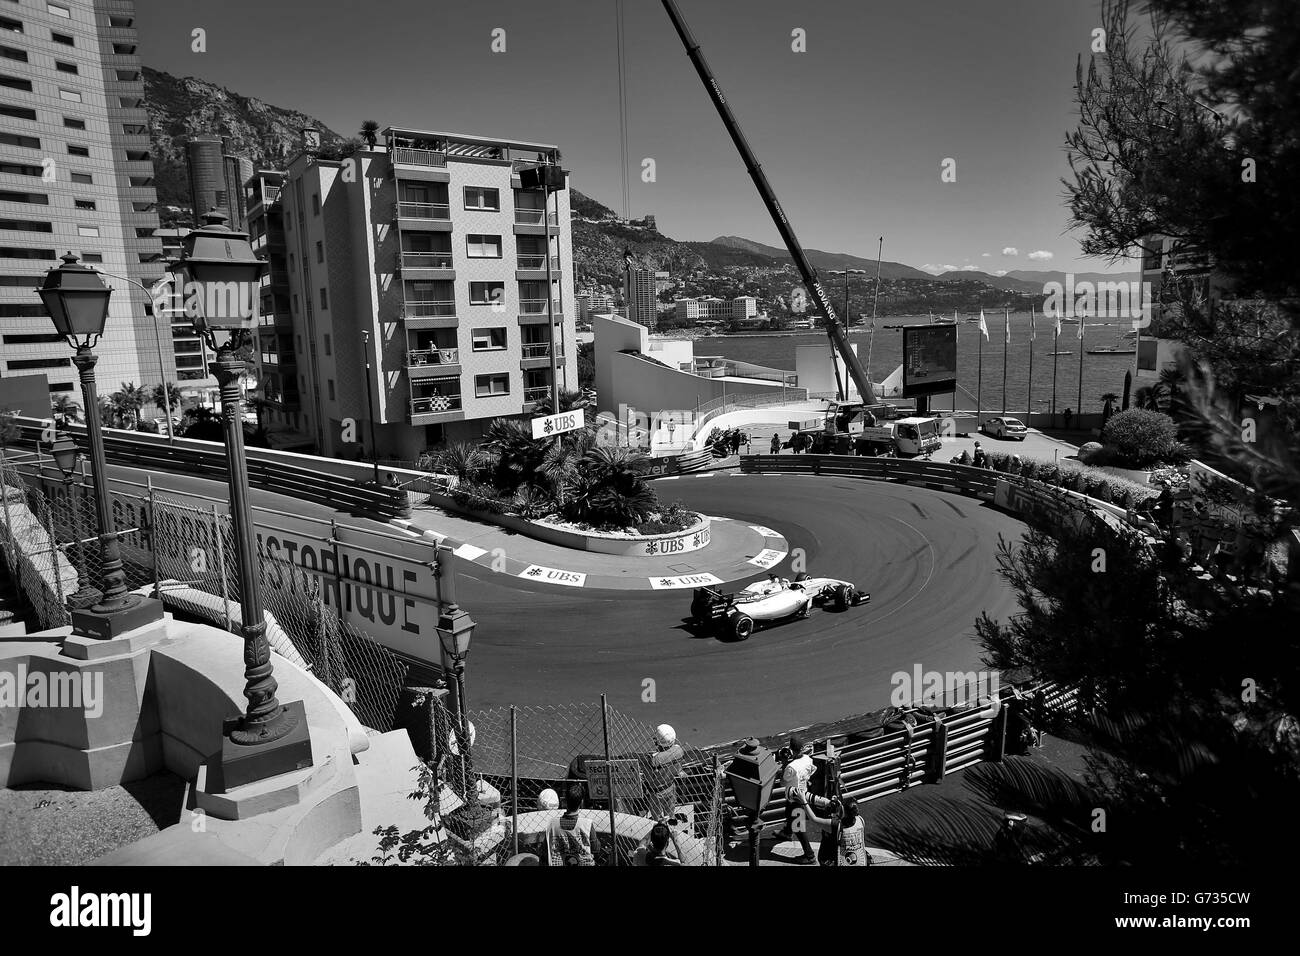 Motor Racing - Campionato del Mondo di Formula Uno - 2014 Grand Prix di Monaco - Qualifiche - Circuito de Monaco Foto Stock